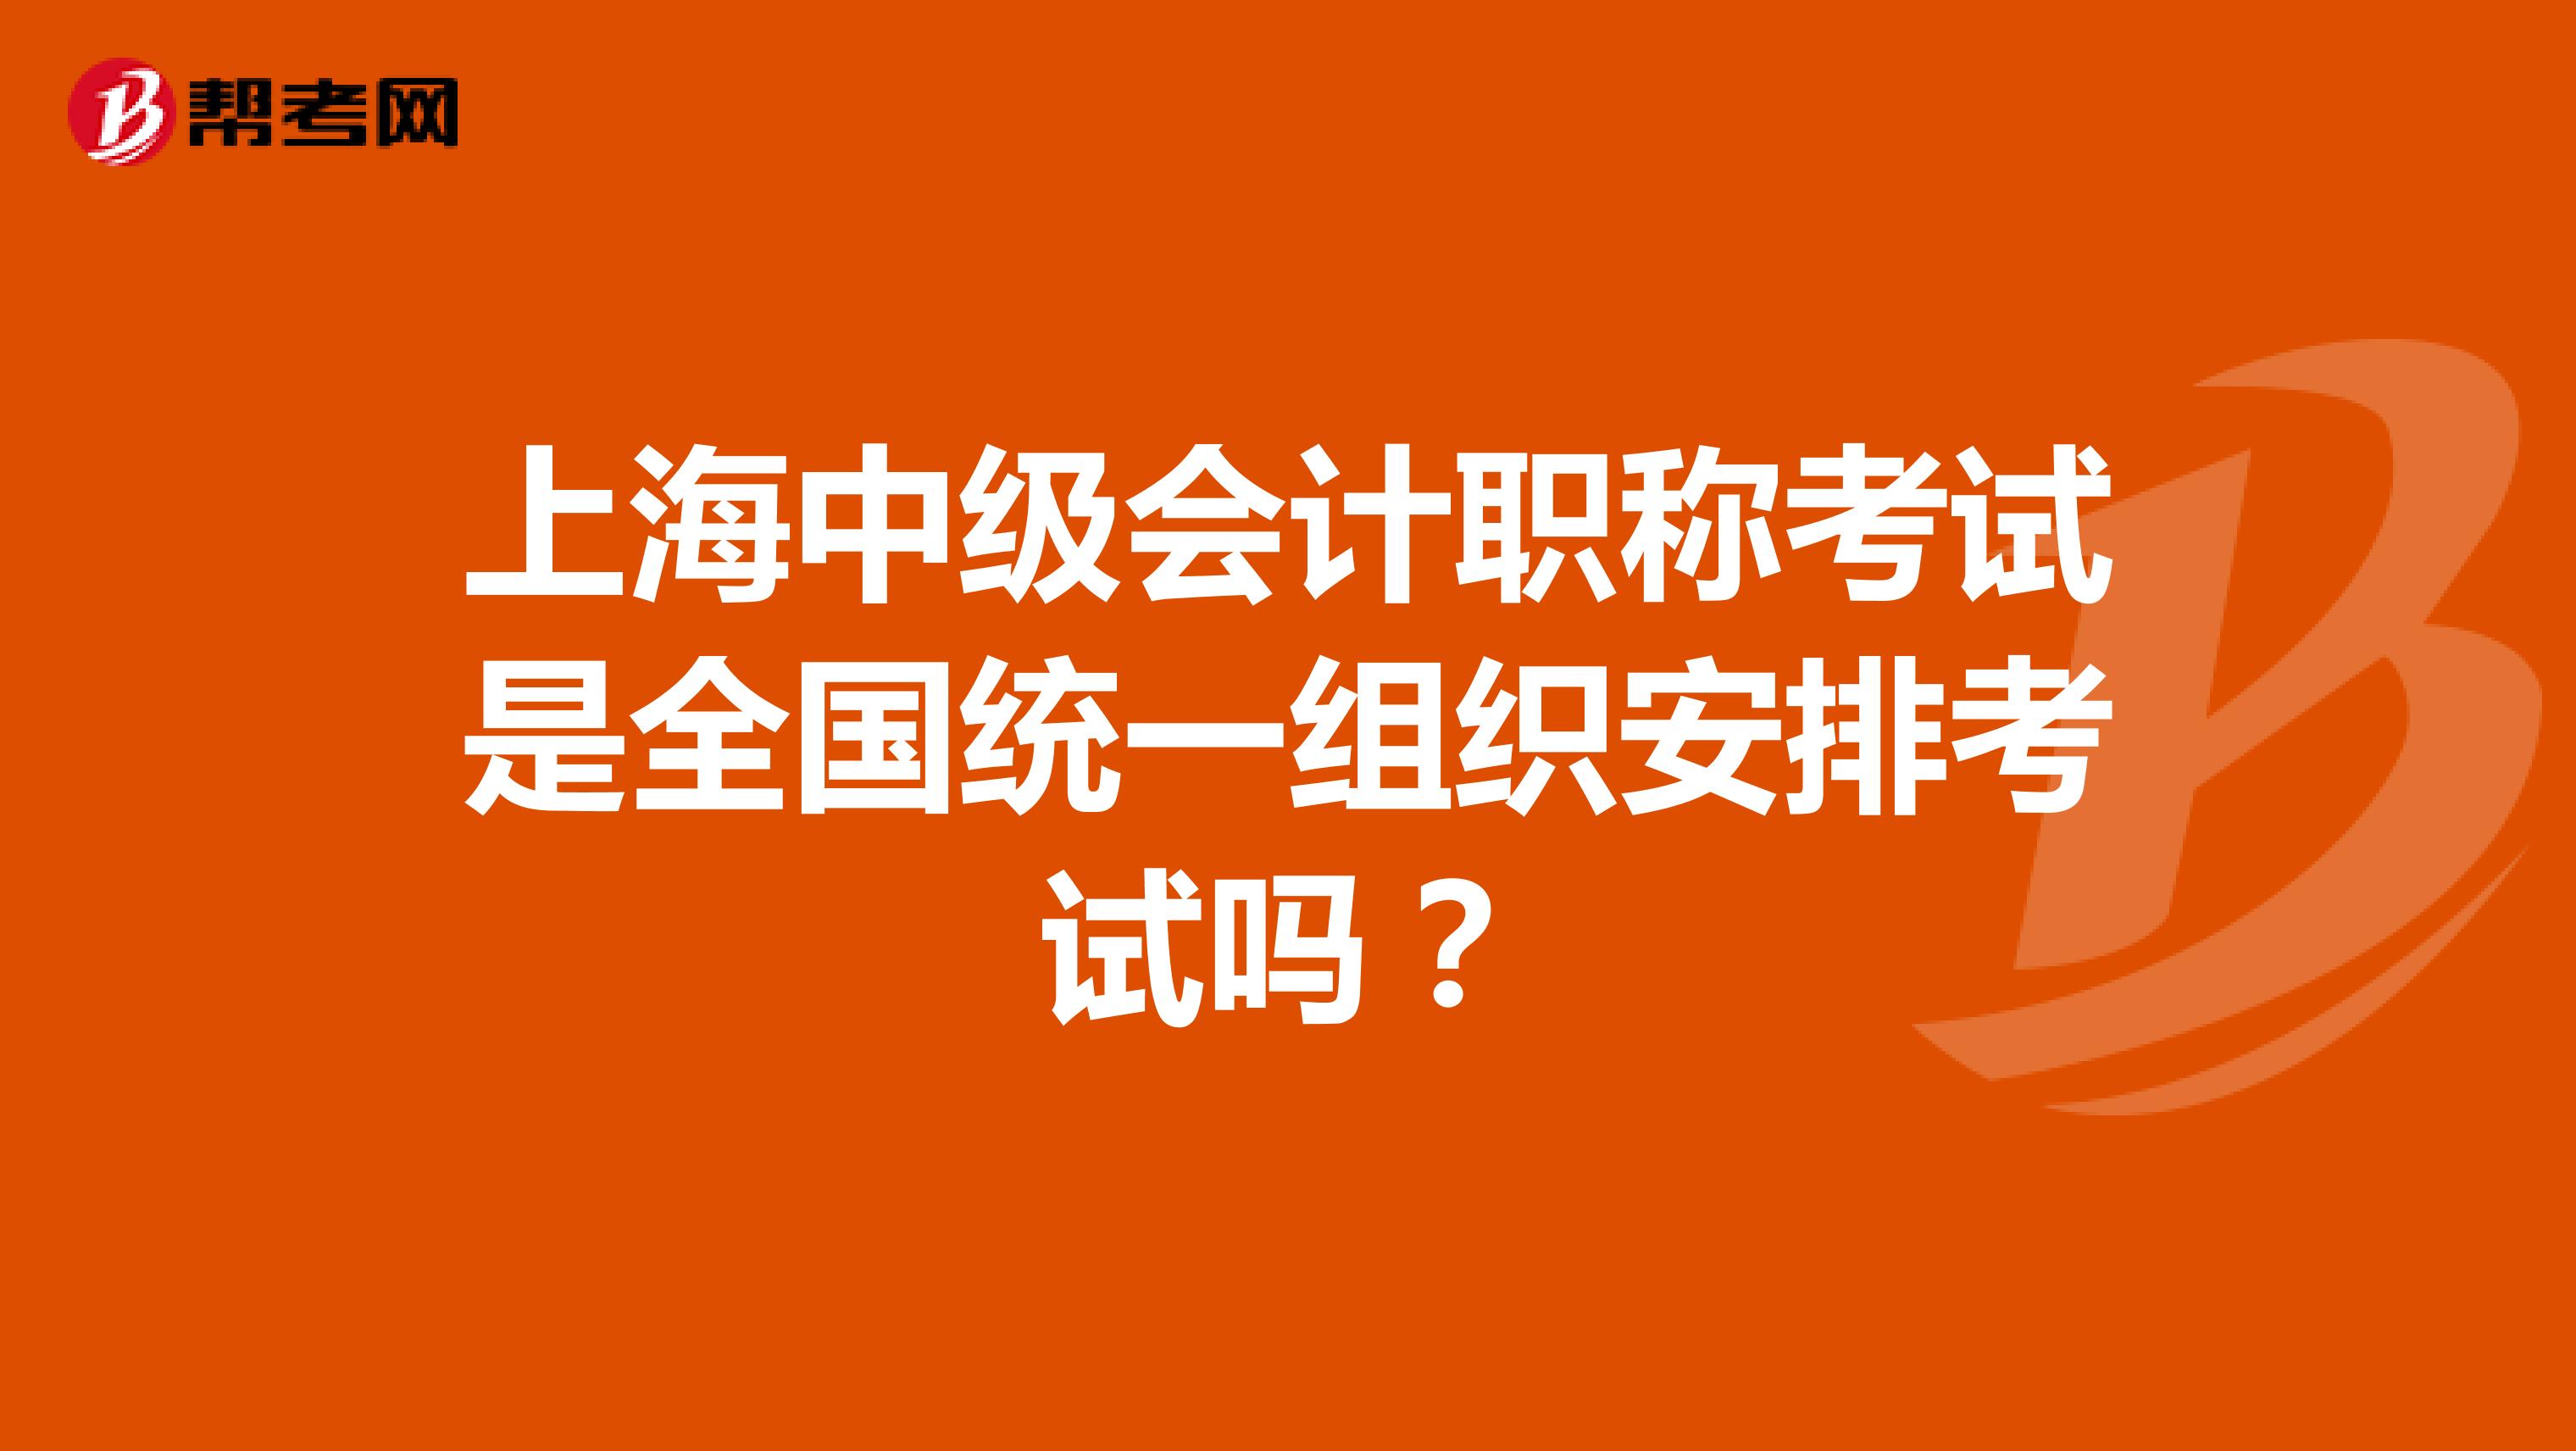 上海中级会计职称考试是全国统一组织安排考试吗？